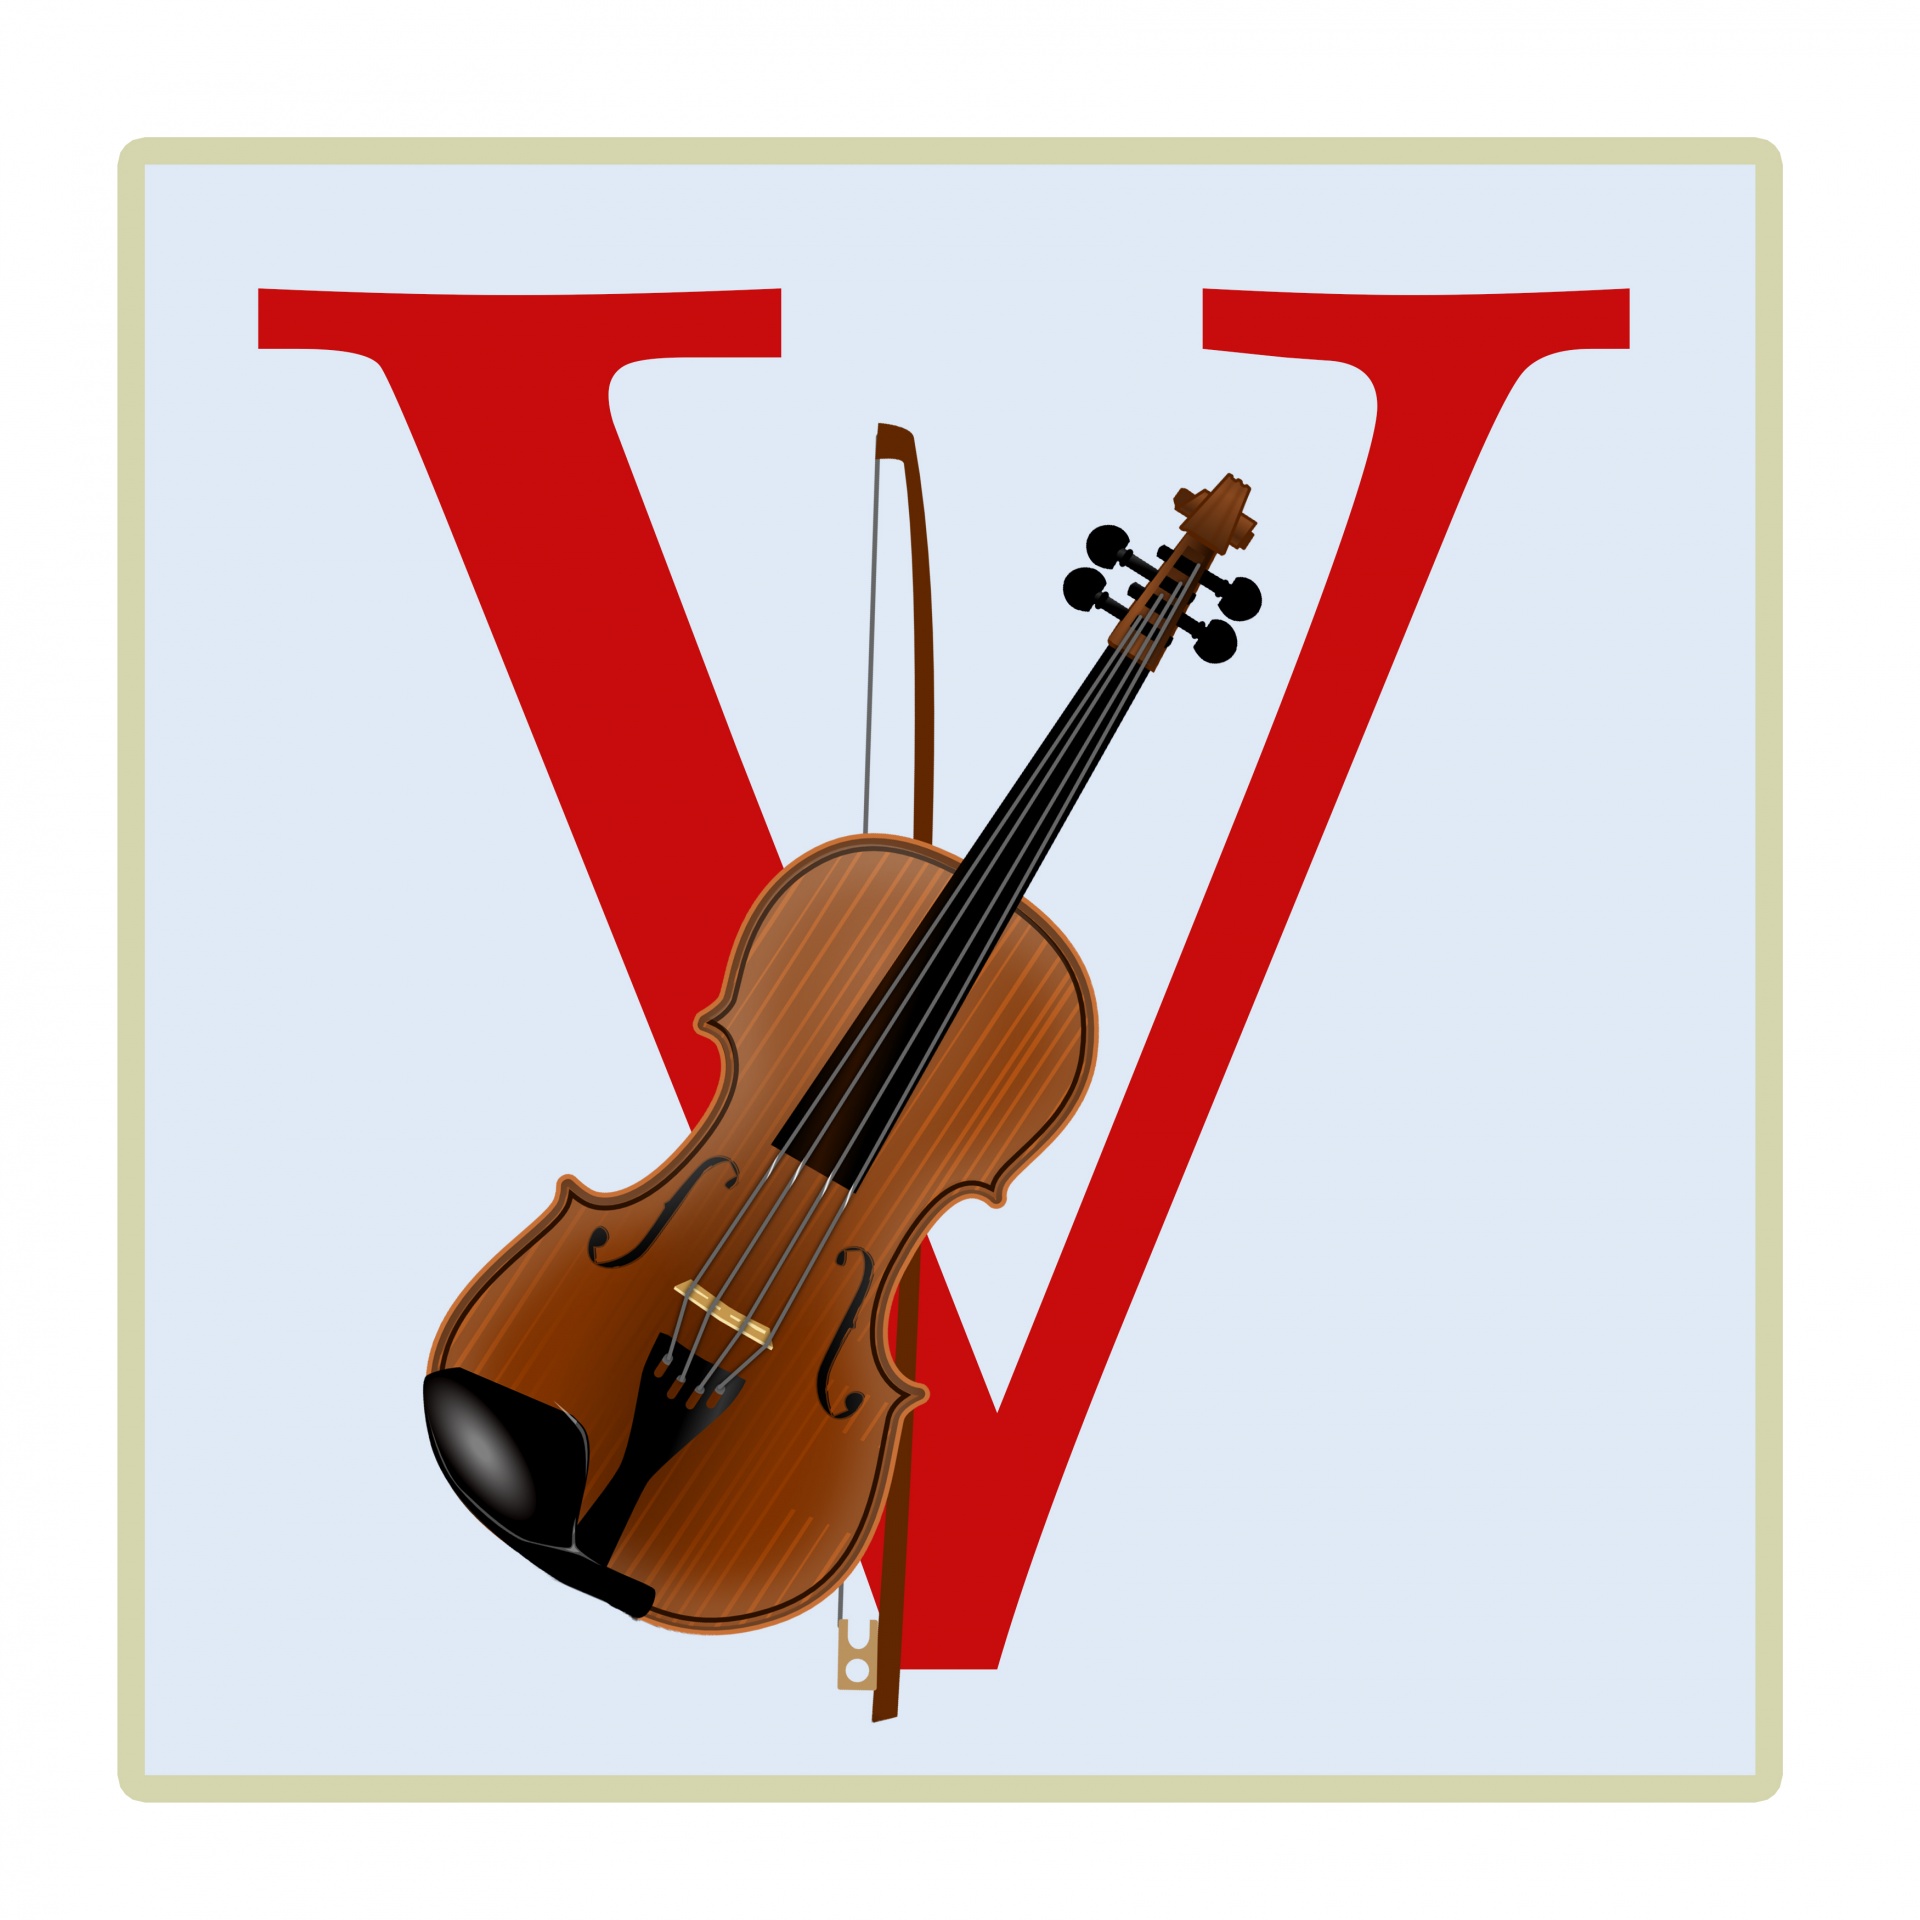 Letter V, Violin Illustration